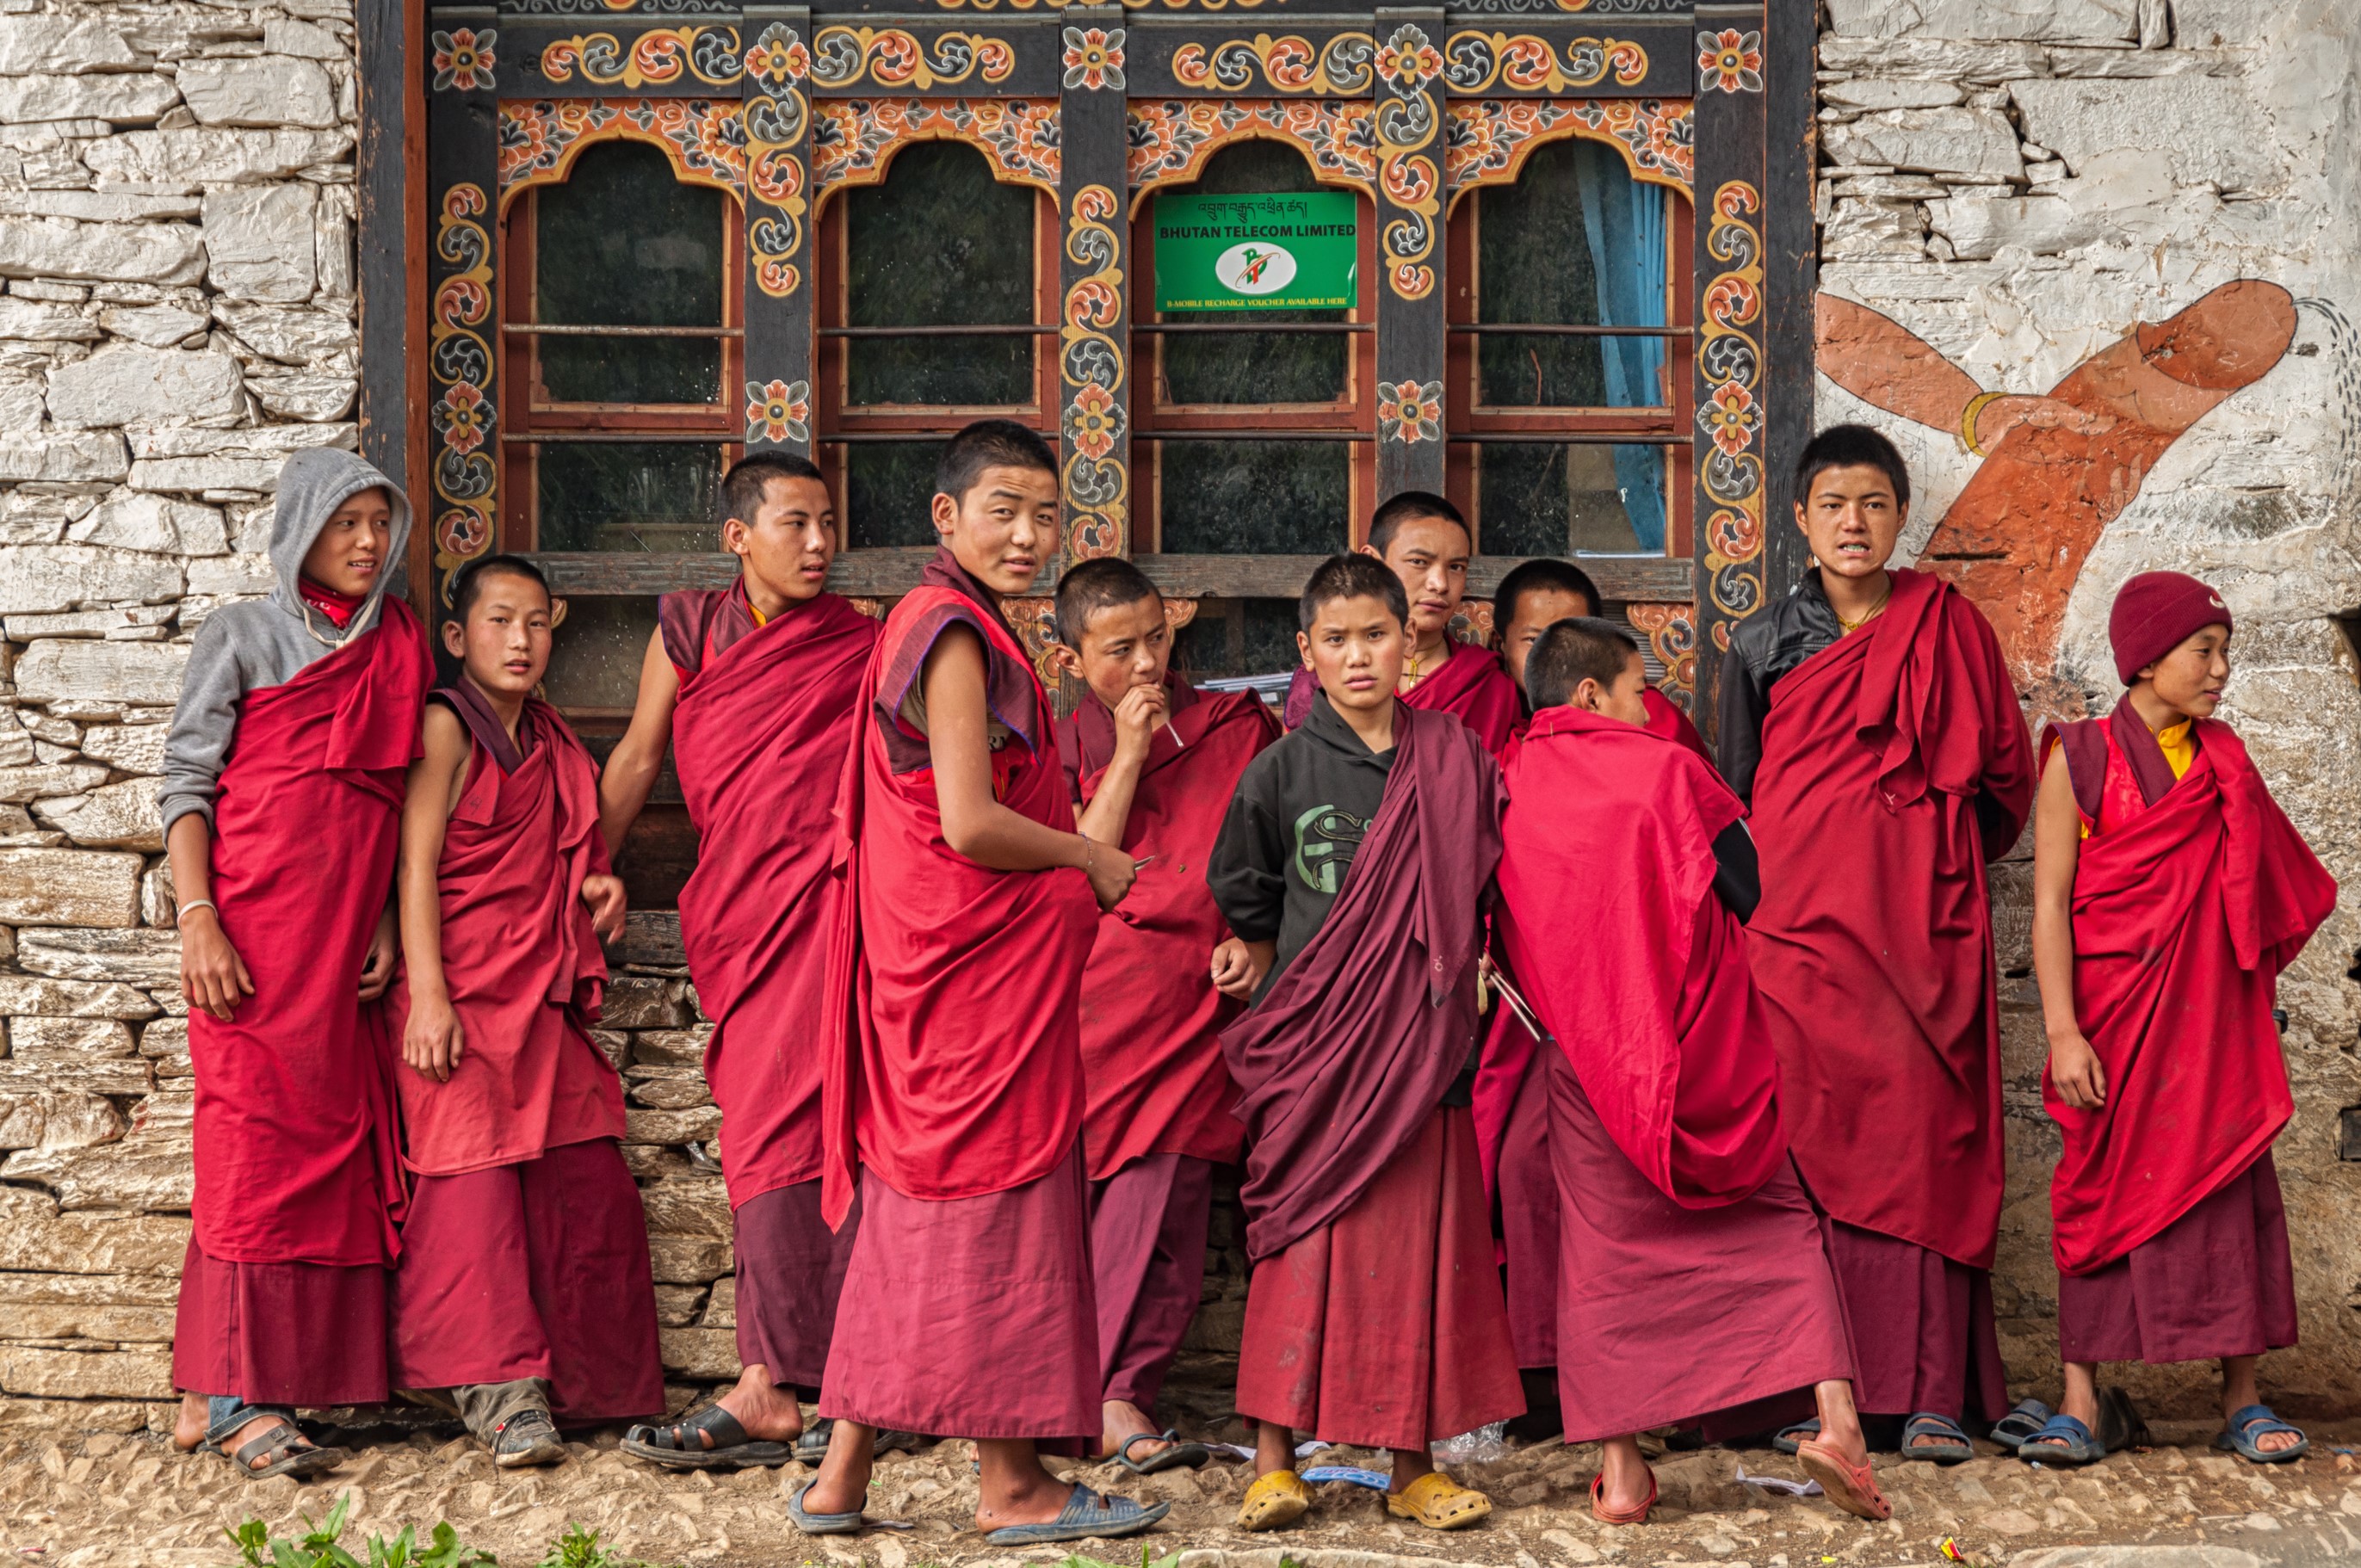 Elizabeth Sanjuan: Boys of Bhutan - Bhutan